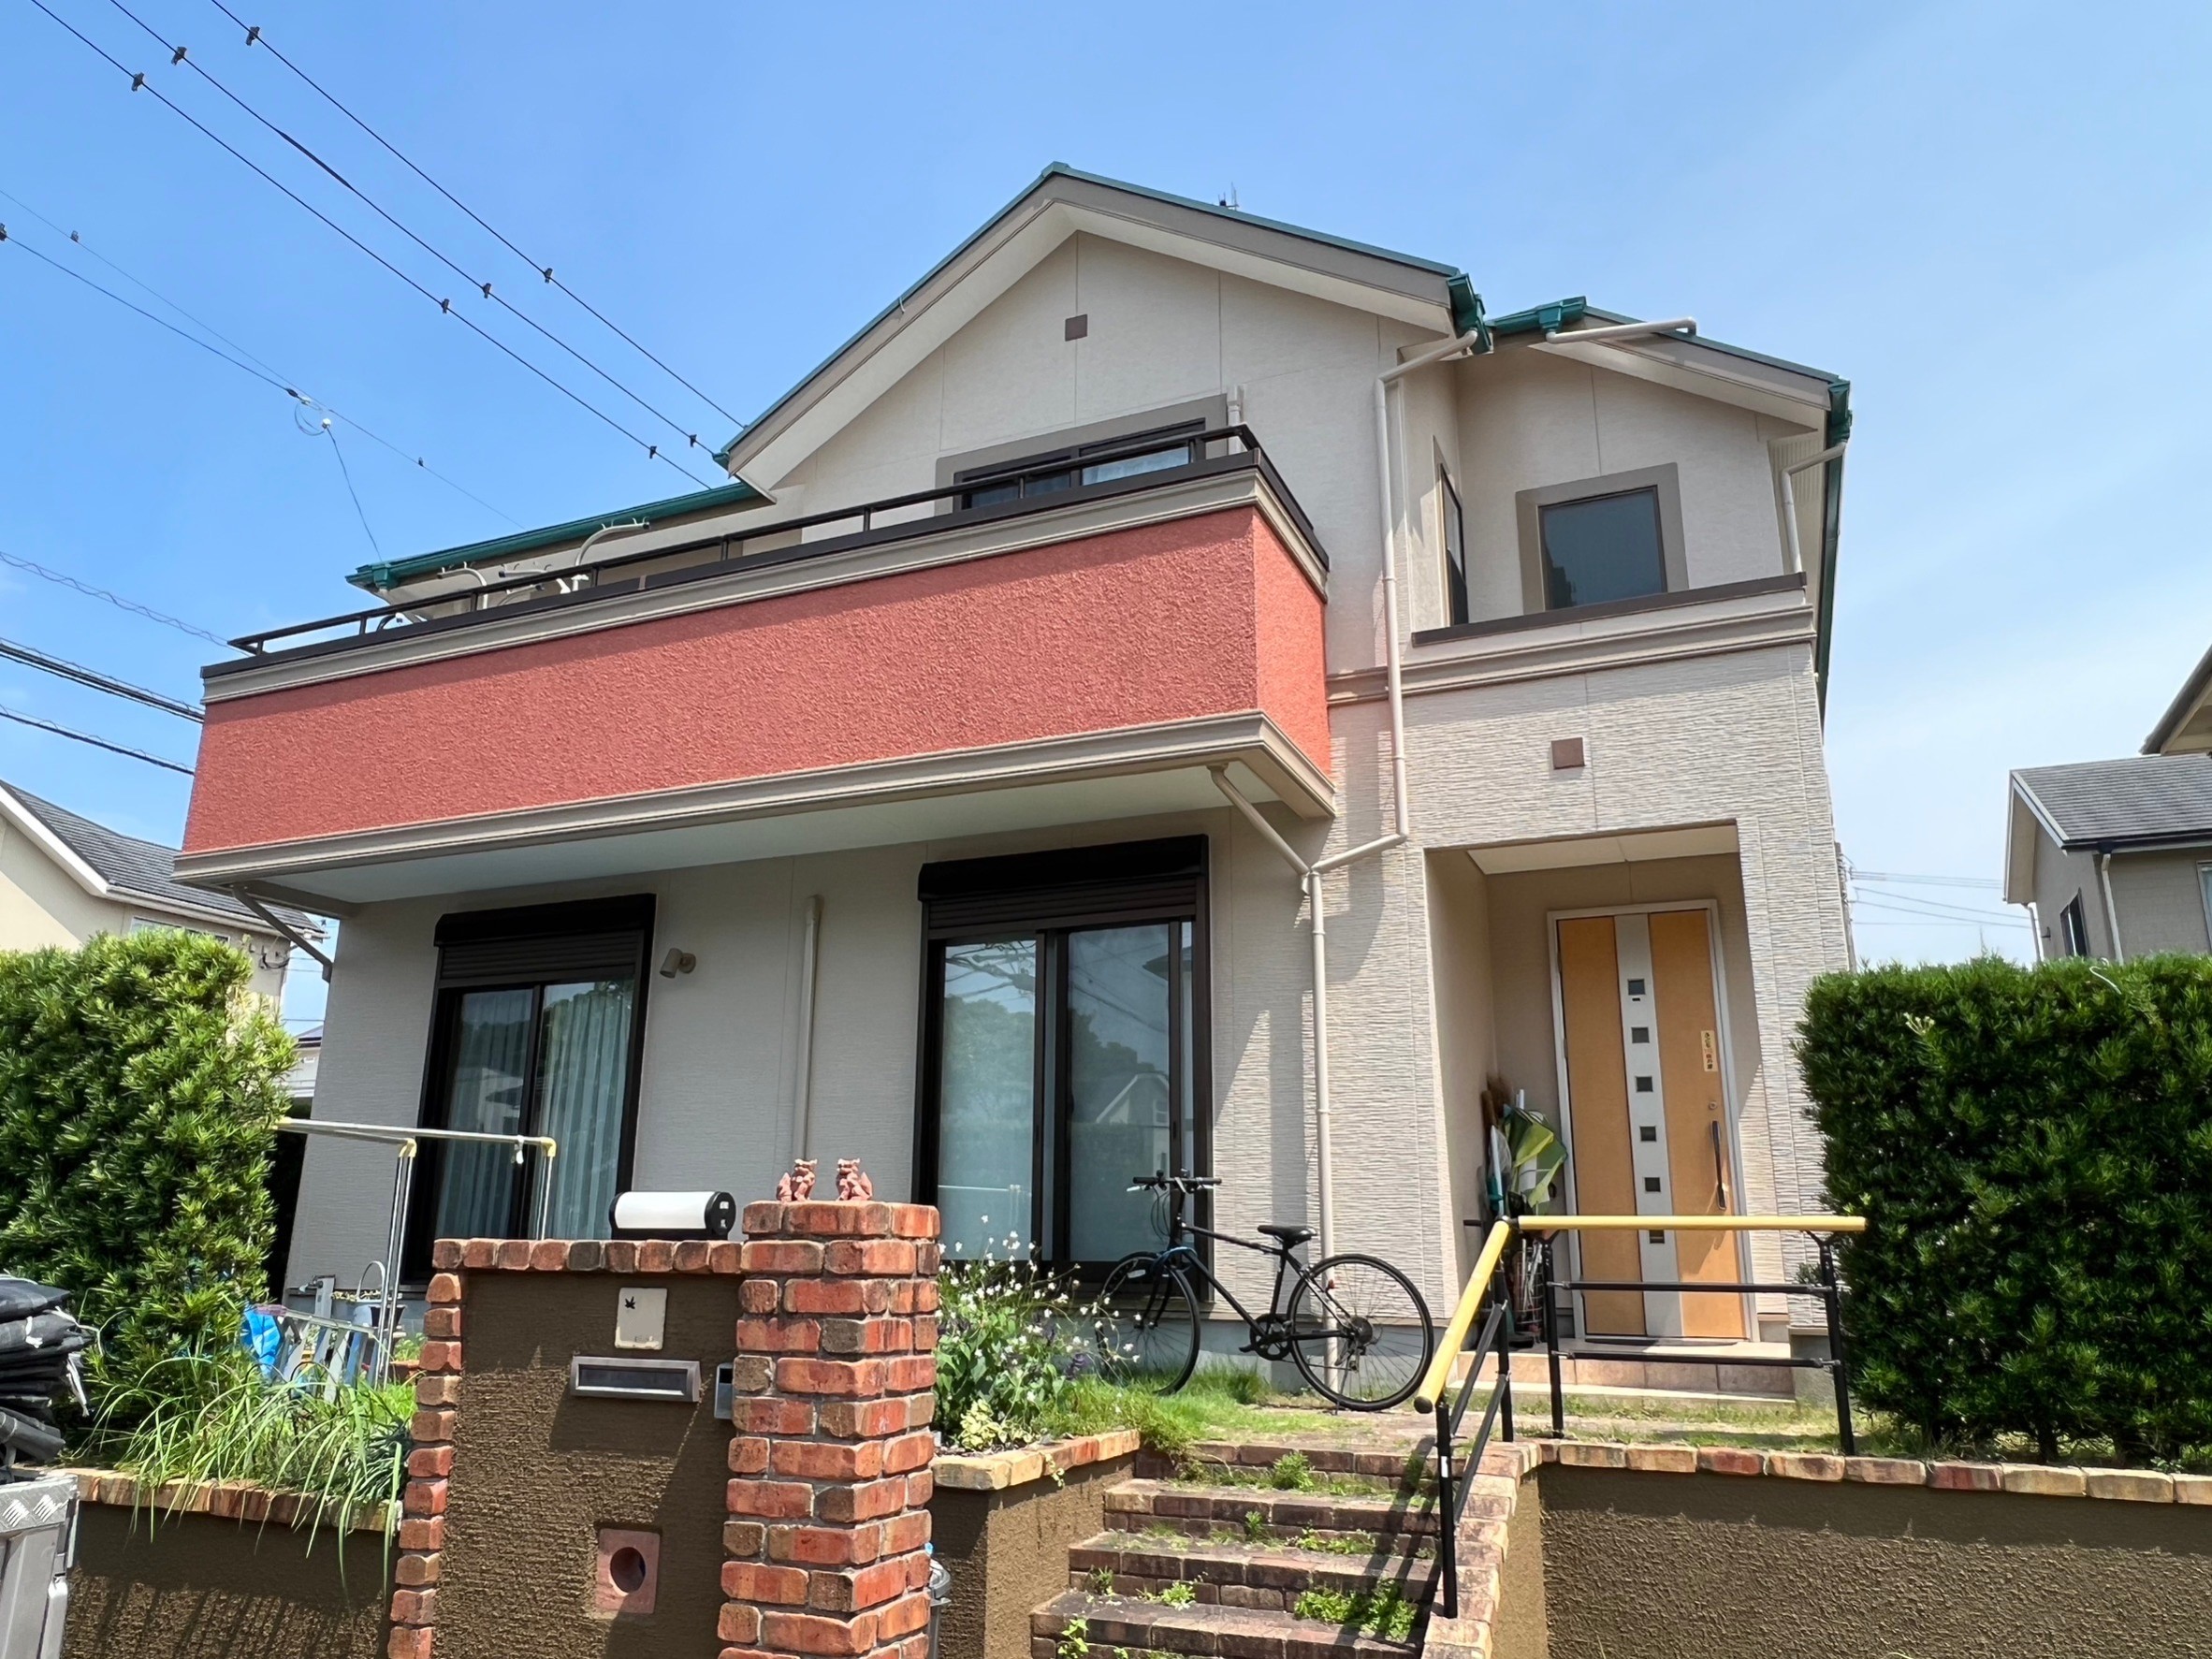 福岡県小郡市美鈴の杜のI様邸で実績のあるシリコン塗料を使用して屋根と外壁の塗装を行っています。7/28完成です。【ホームページより】